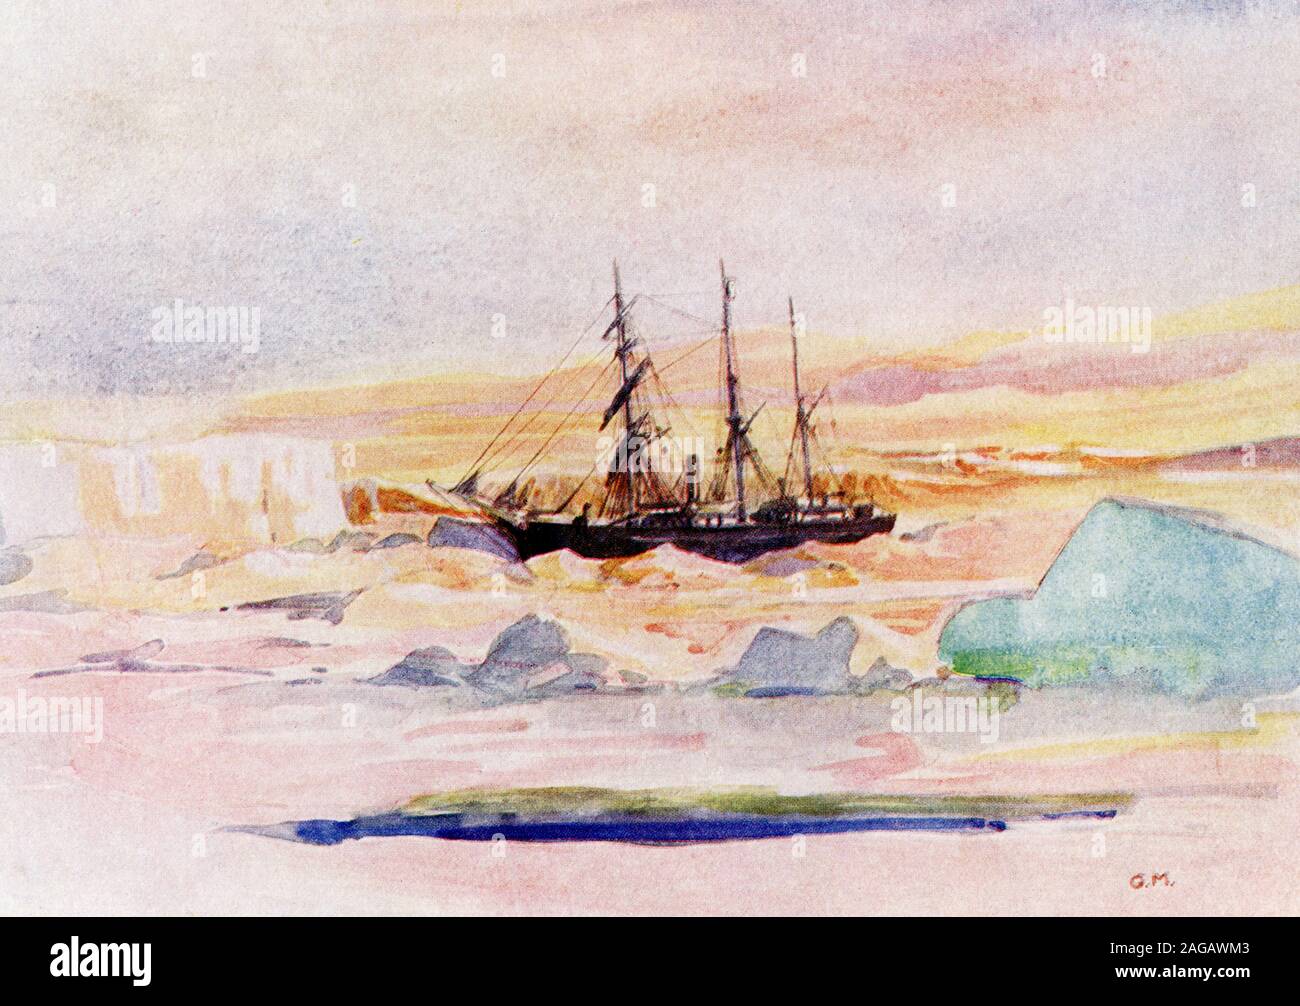 Zu sehen ist hier Shackleton's Schiff, die Nimrod, unter dem Eis in McMurdo Sound, der Winter Land Viertel der British Antarctic Expedition. Die Legende geht weiter: Von Sir Ernest Shackelton's Erlaubnis aus seinem Buch "Im Herzen der Antarktis", veröffentlicht durch. Herr Heinemann. Shackleton war ein britischer Polarforscher, der drei britischen Expeditionen in die Antarktis führte. Er war einer der wichtigsten Figuren der Periode als die heroischen Zeitalter der Antarktischen Erforschung bekannt. Shackleton ging in McMurdo Sound im Jahre 1908. Er starb im Jahre 1922. Stockfoto